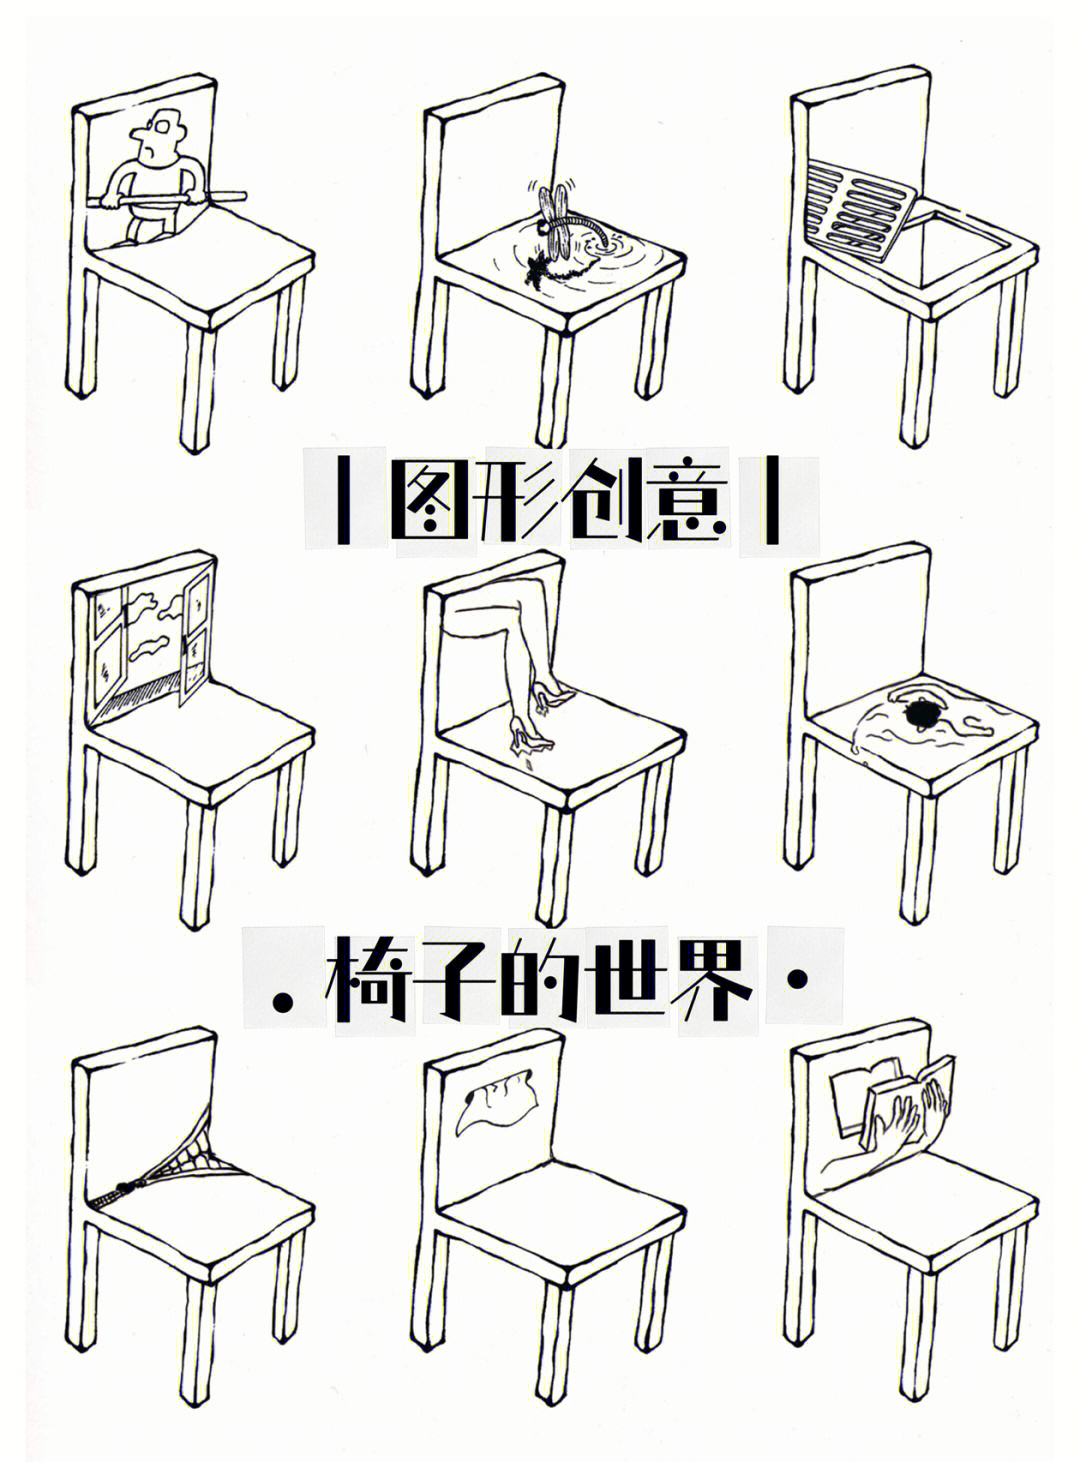 图形创意椅子的世界